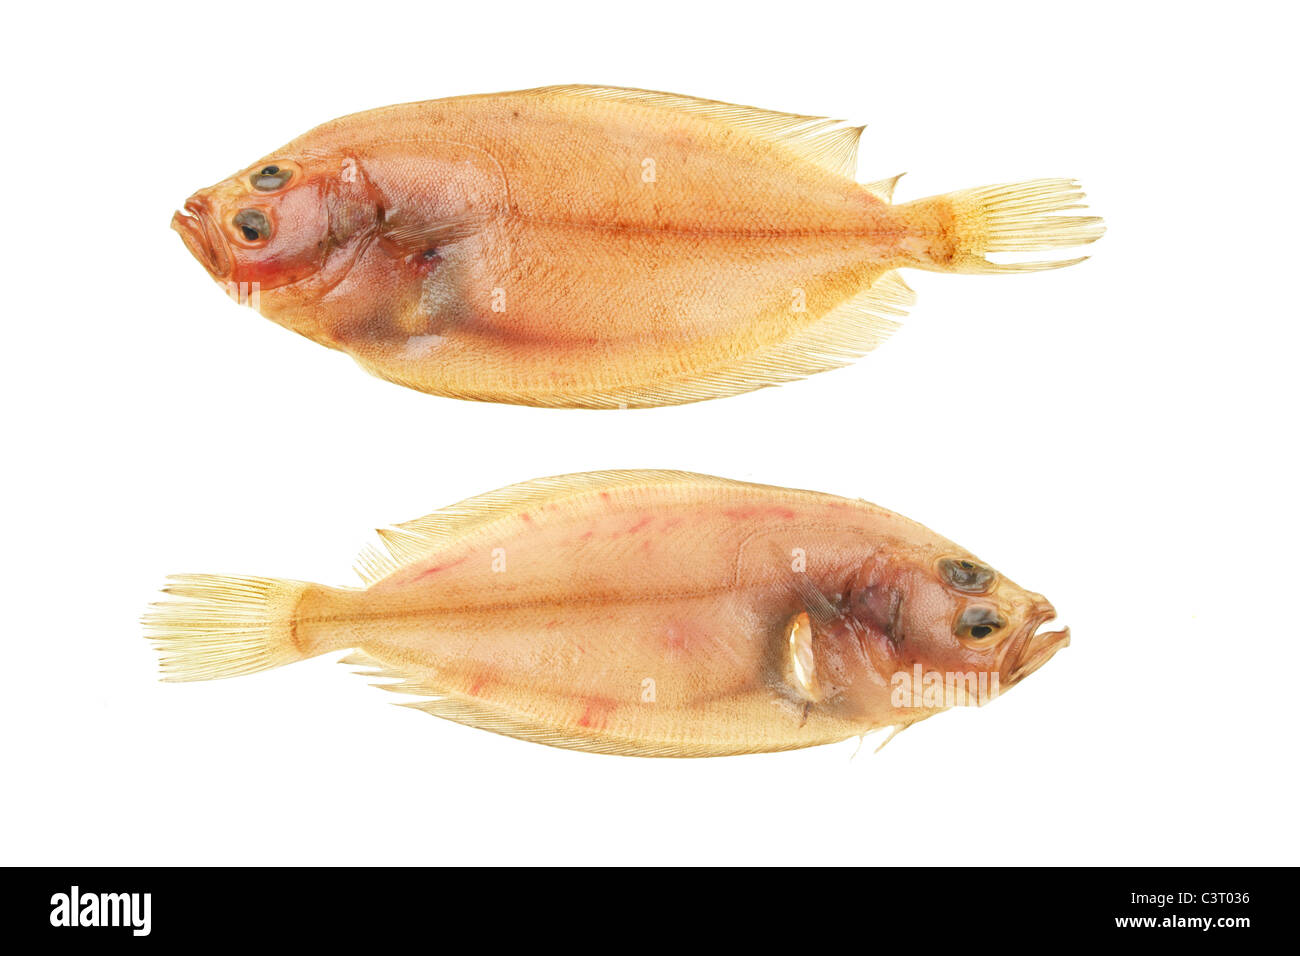 Two Megrim sole flatfish isolated on white Stock Photo